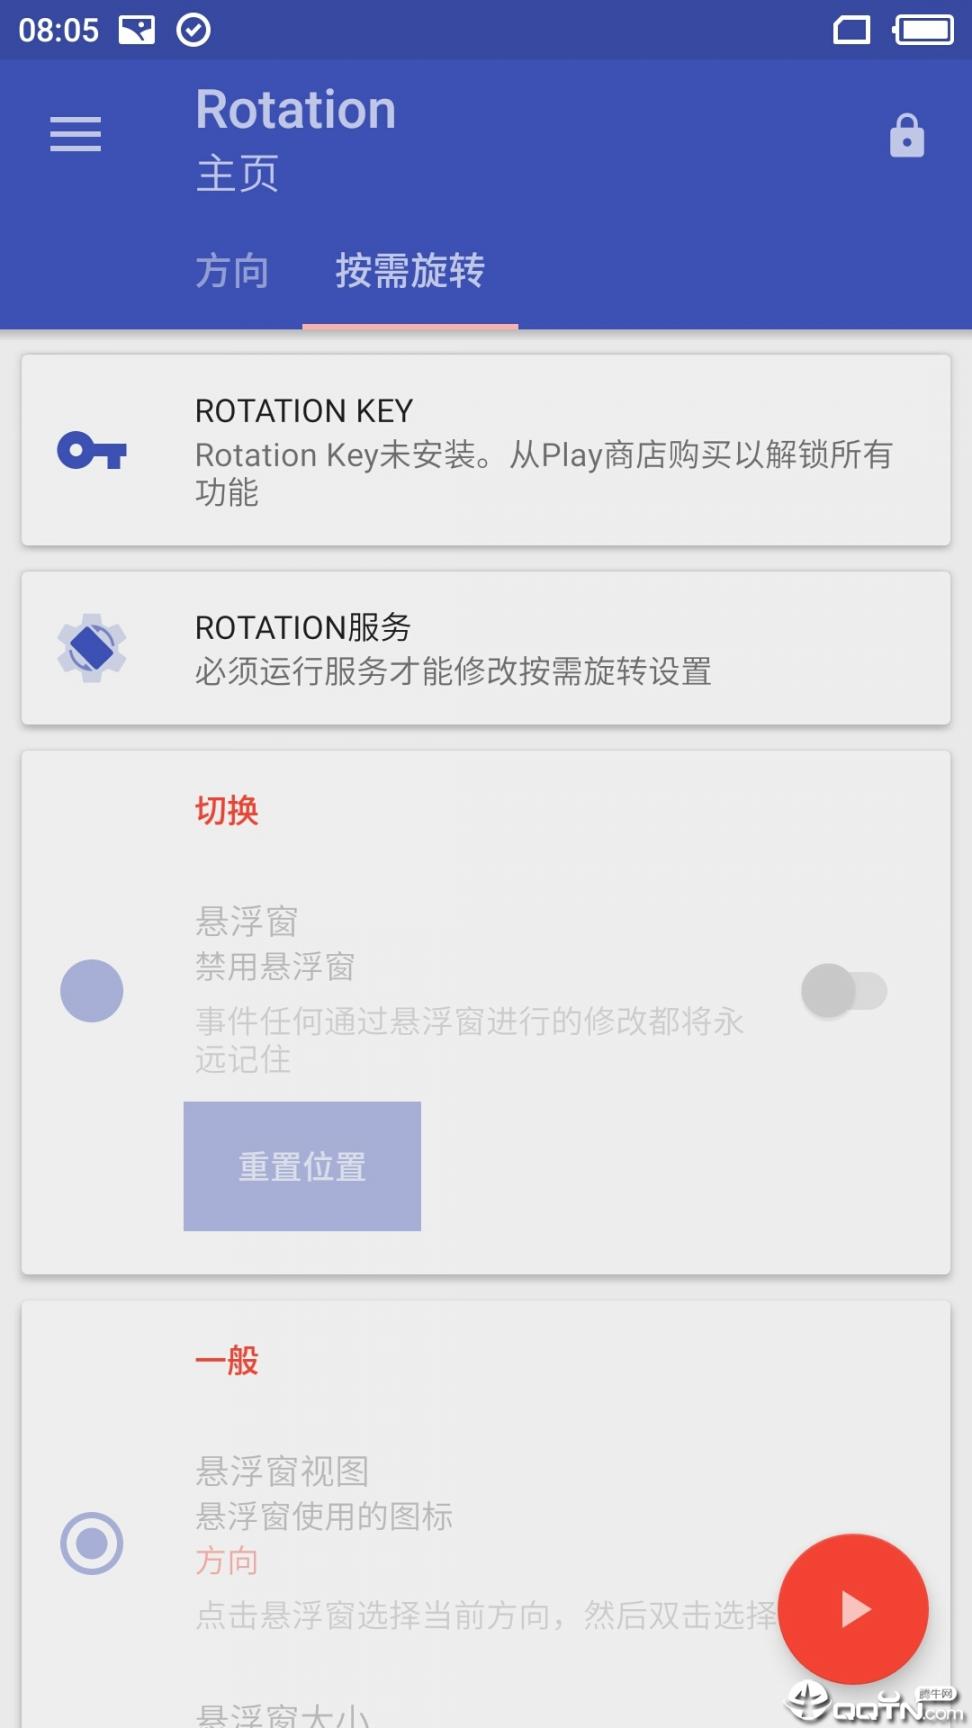 屏幕方向管理器 Rotation2